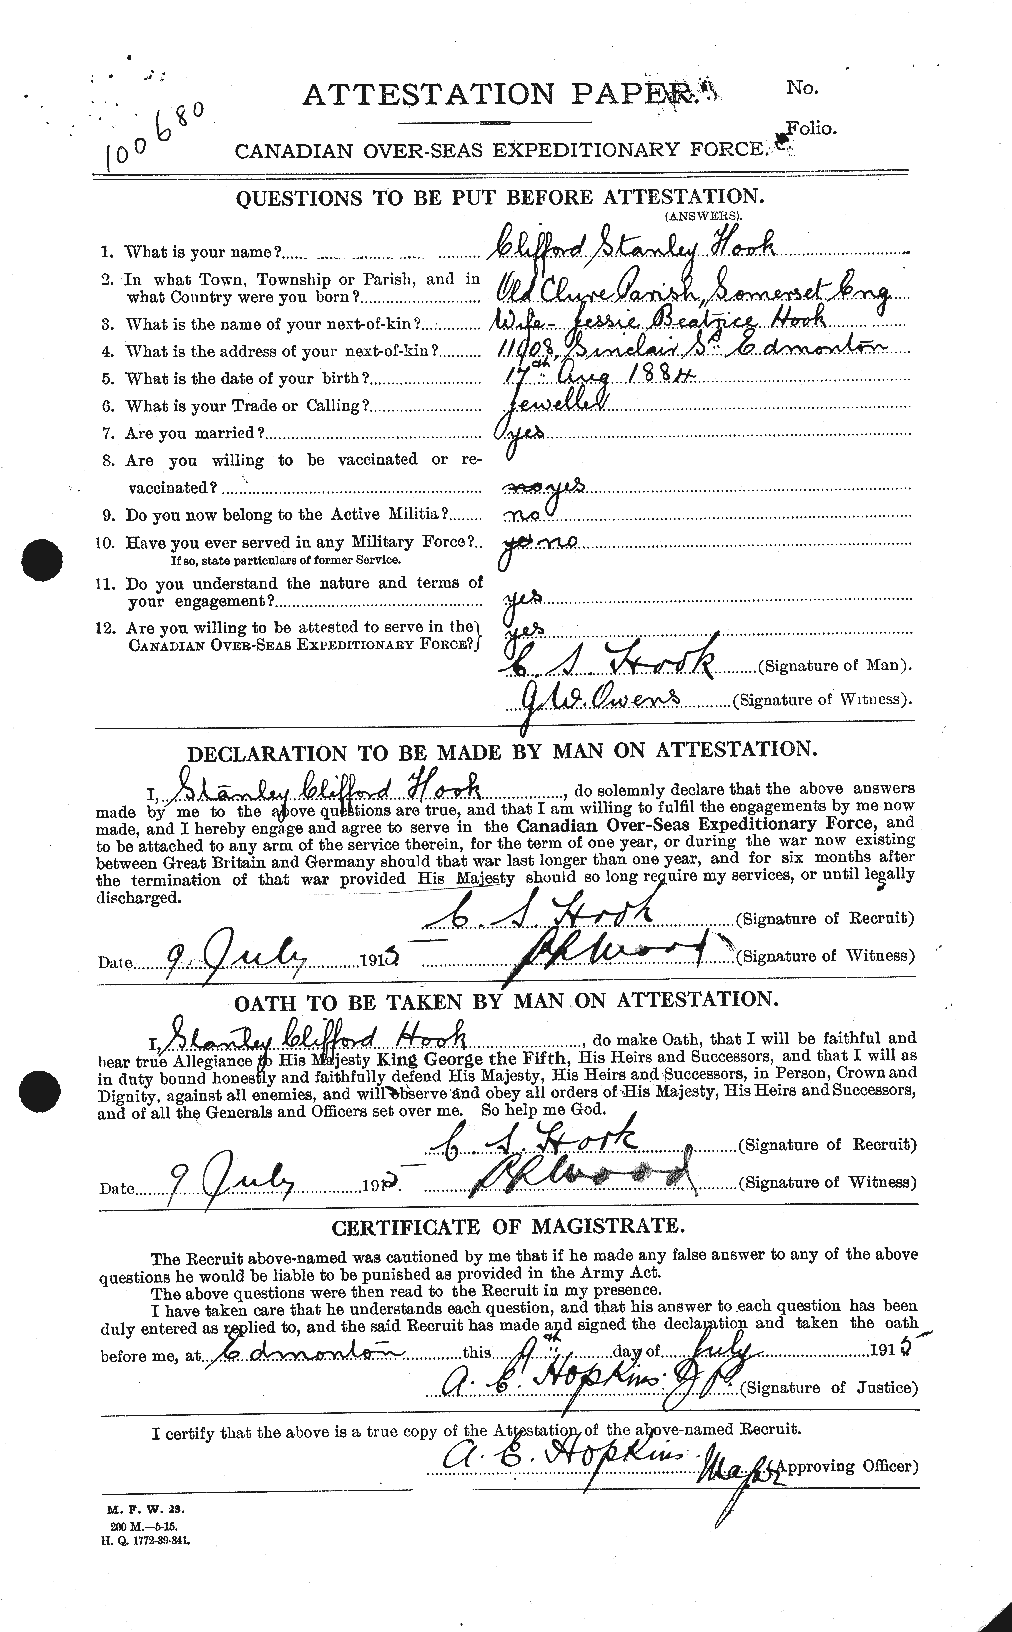 Dossiers du Personnel de la Première Guerre mondiale - CEC 398128a